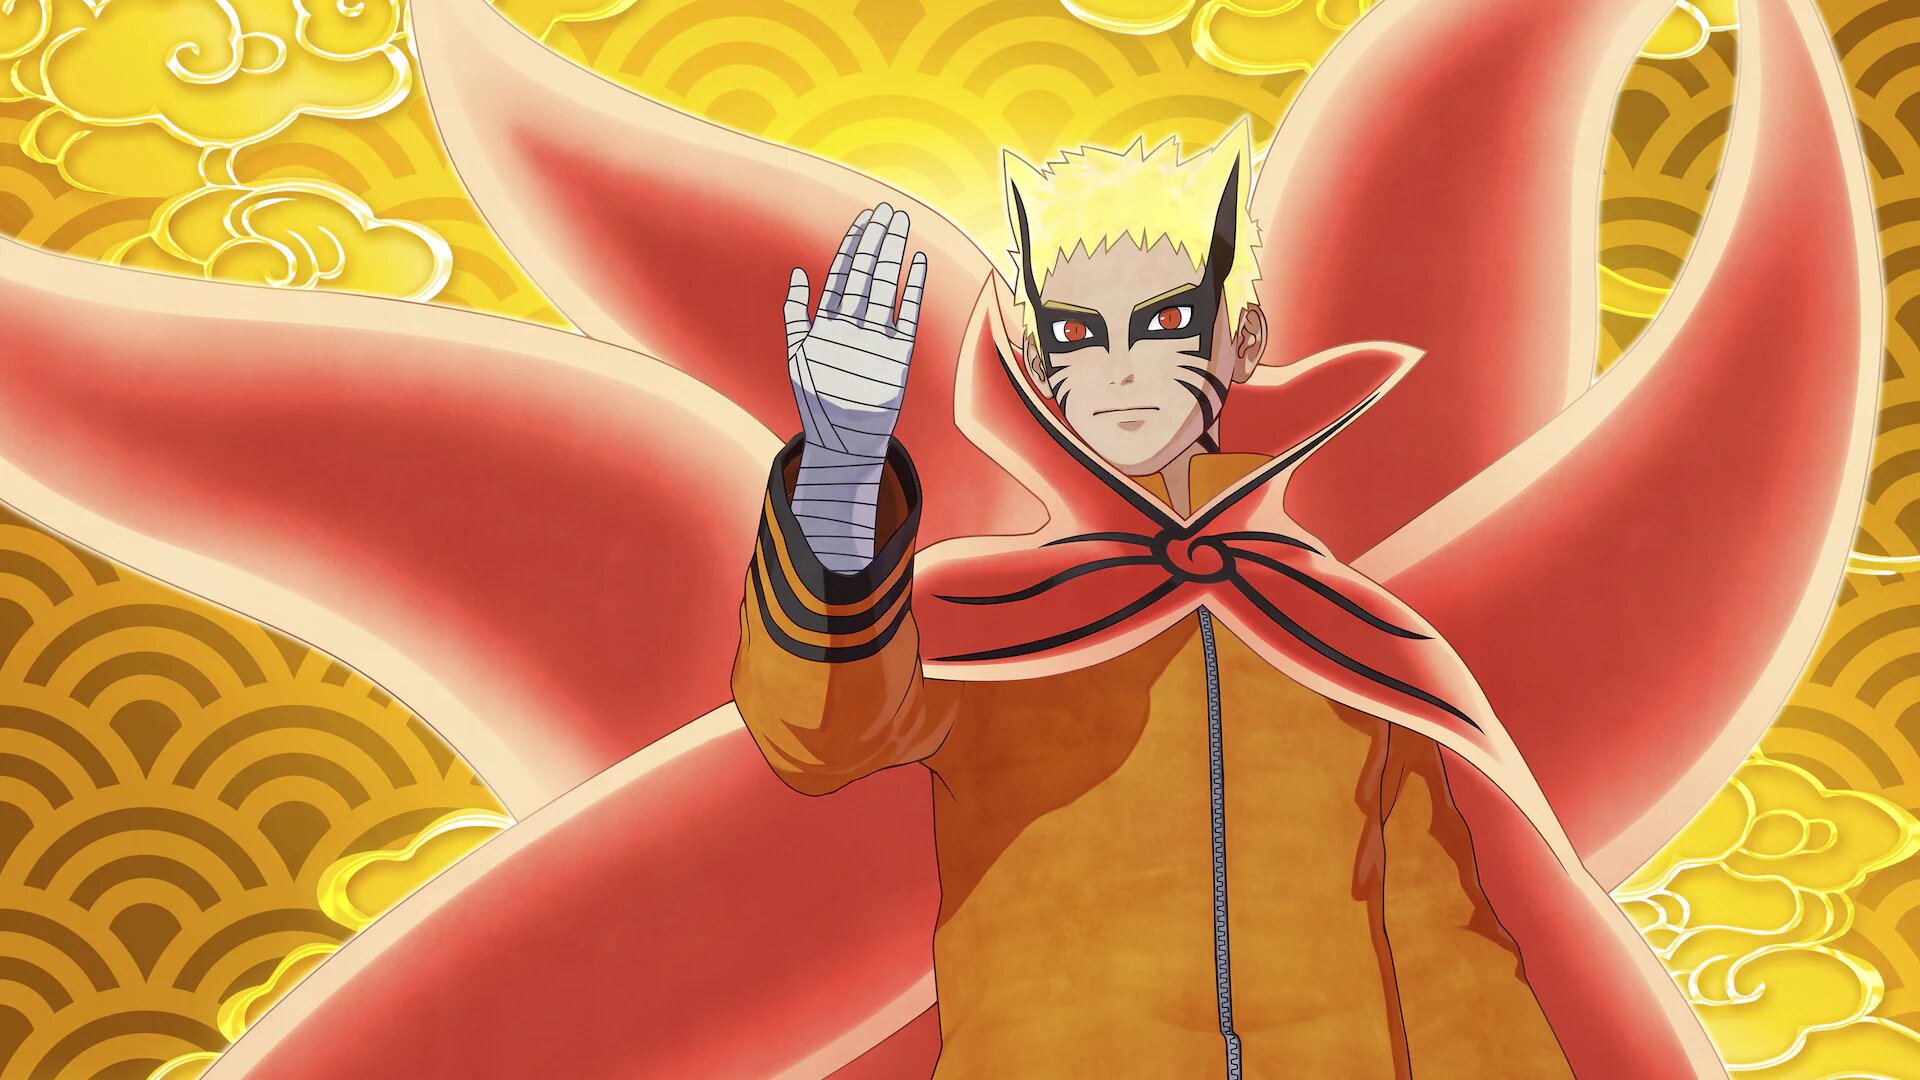 Uzumaki Naruto illustration, Naruto to Boruto: Shinobi Striker